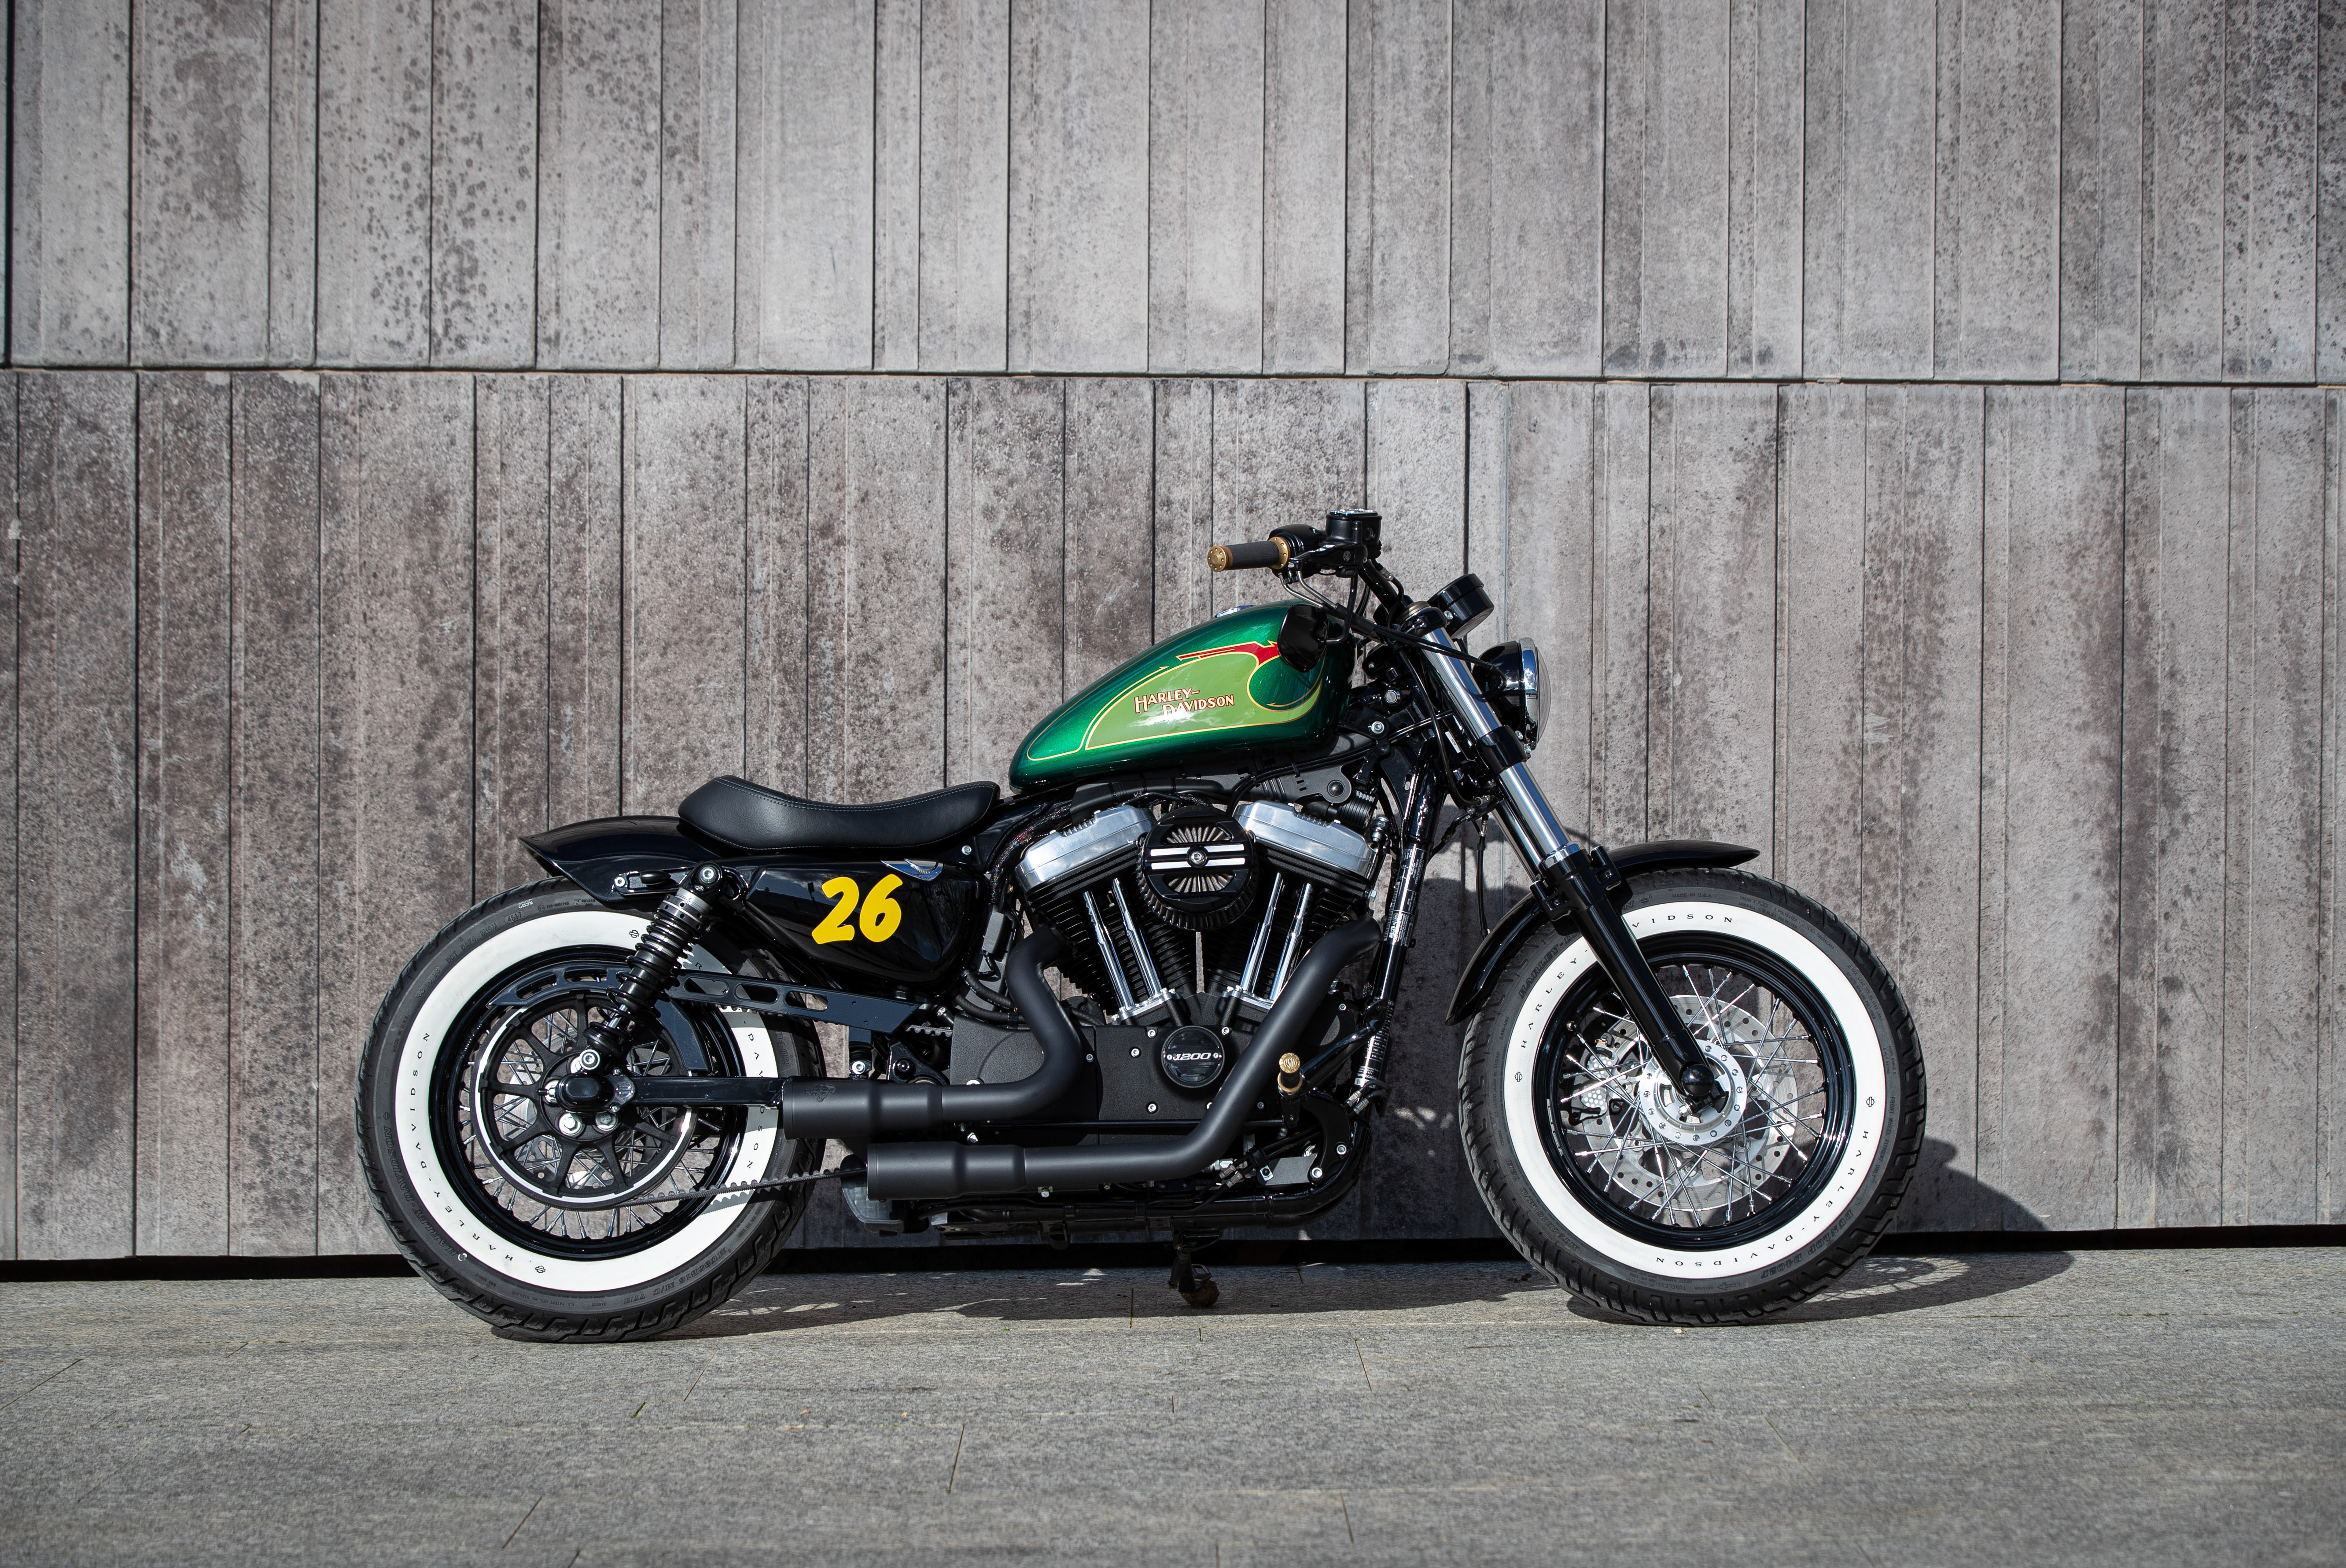 Ngam dan xe Harley-Davidson Sportster lot xac voi ban do Sykes hinh anh 15 2020_Harley_Davidson_Sportster_Custom_5203.jpg